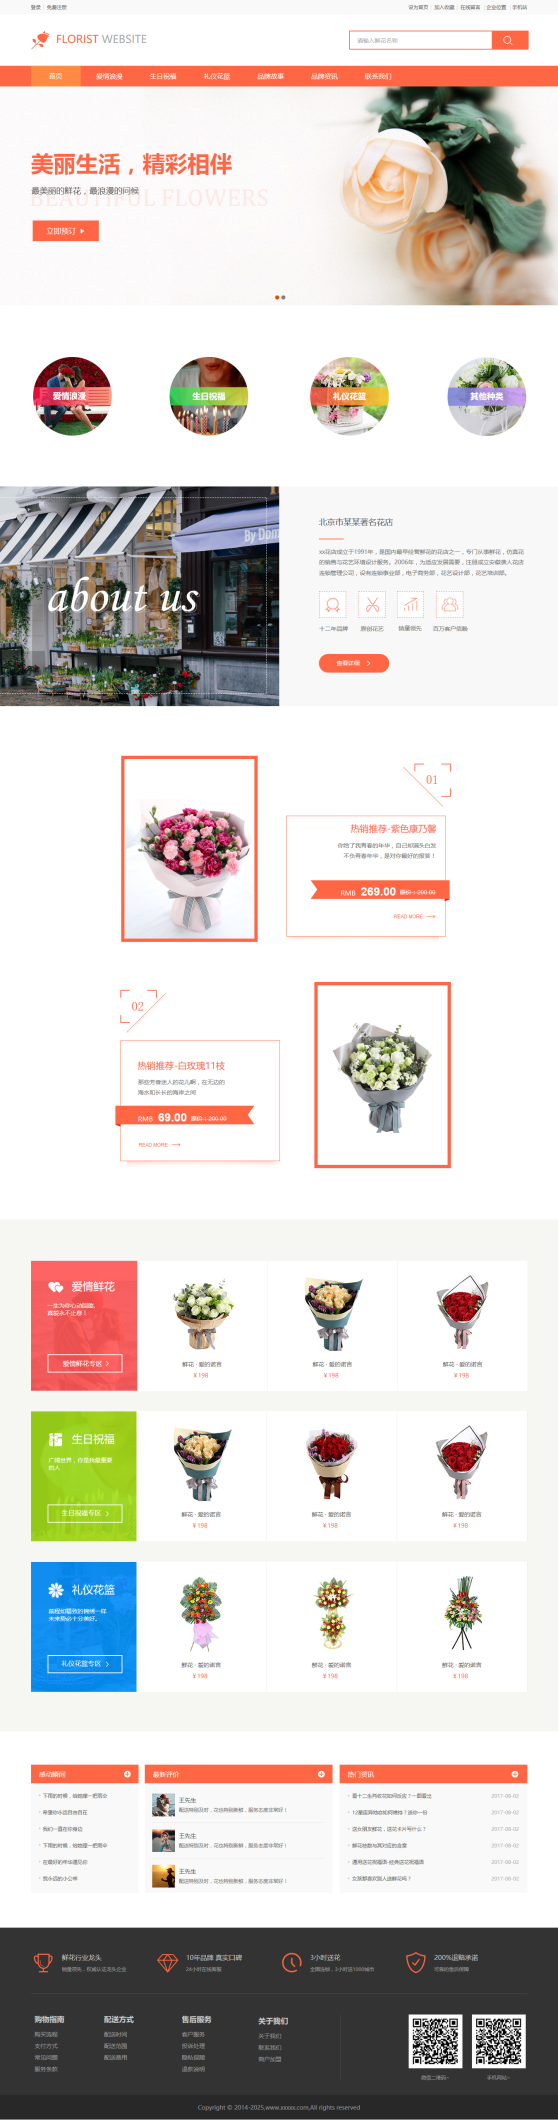 美观花店公司网站模板